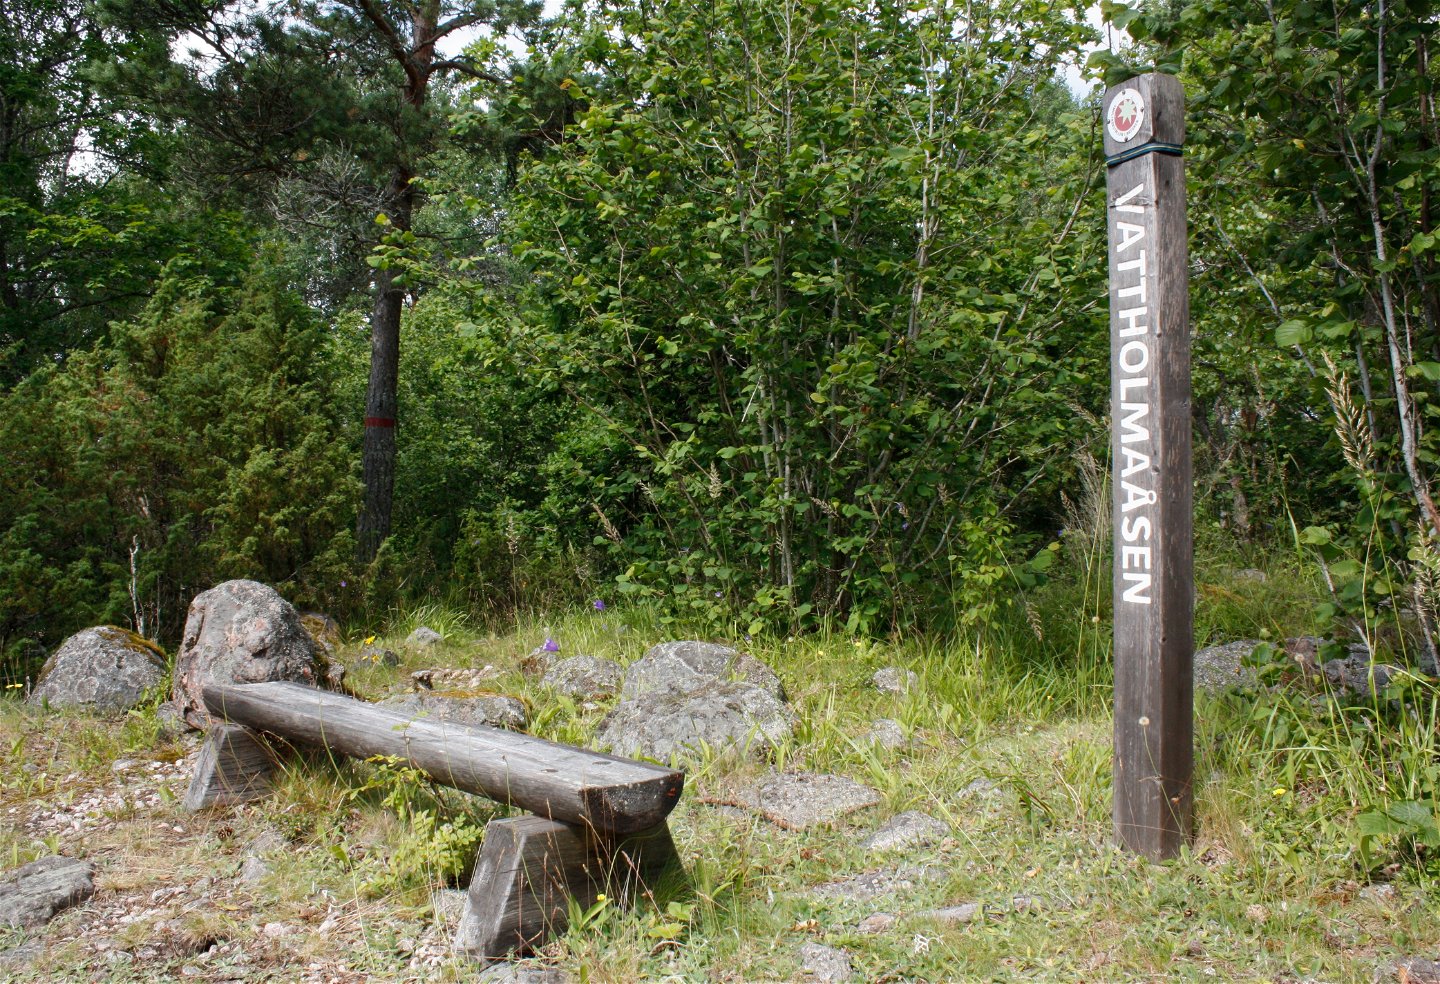 En sittbänk står på stenig yta i skogen. Vid bänken står en hög stolpe med texten Vattholmaåsen på.